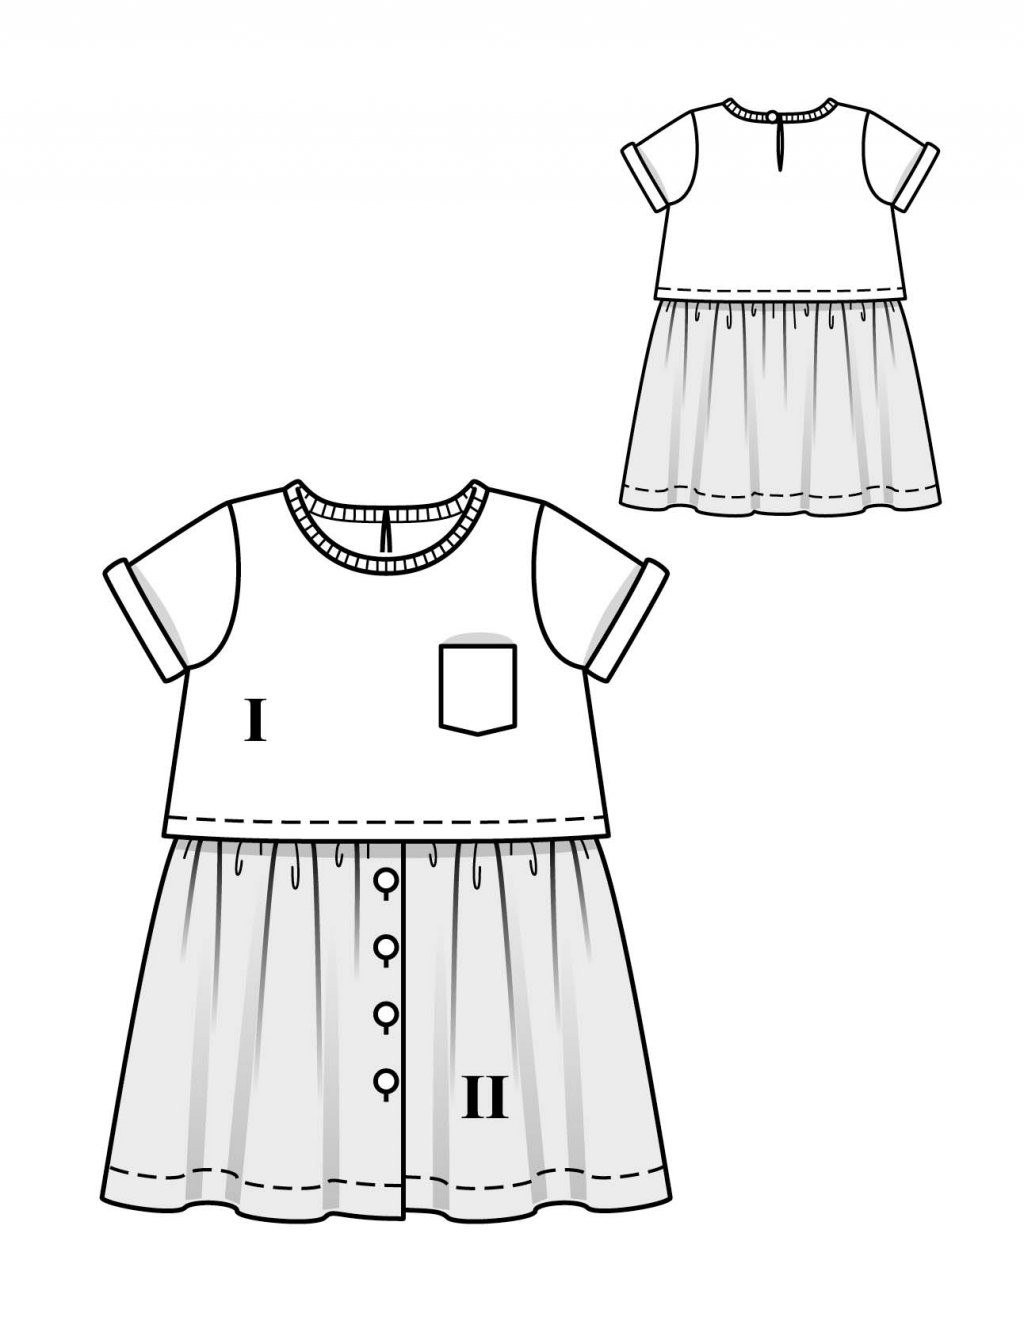 Originální šaty se vzorovanou sukýnkou